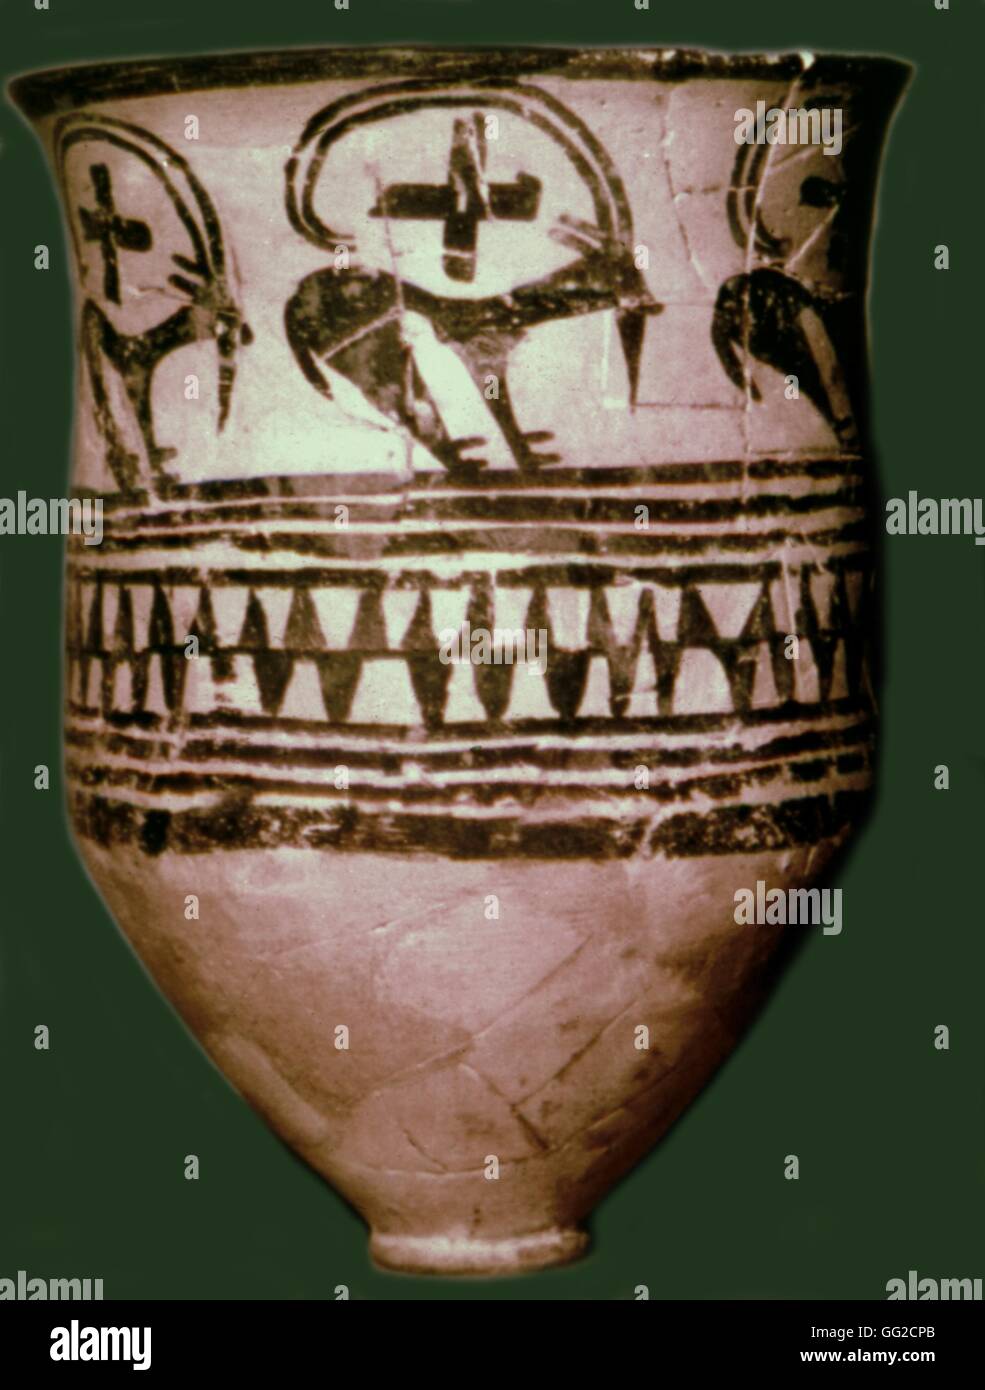 Tepe-Siyalk de céramique, une ville située au sud de Téhéran, 4e millénaire avant J.-C. en Mésopotamie Musée Archéologique de Ankara Banque D'Images